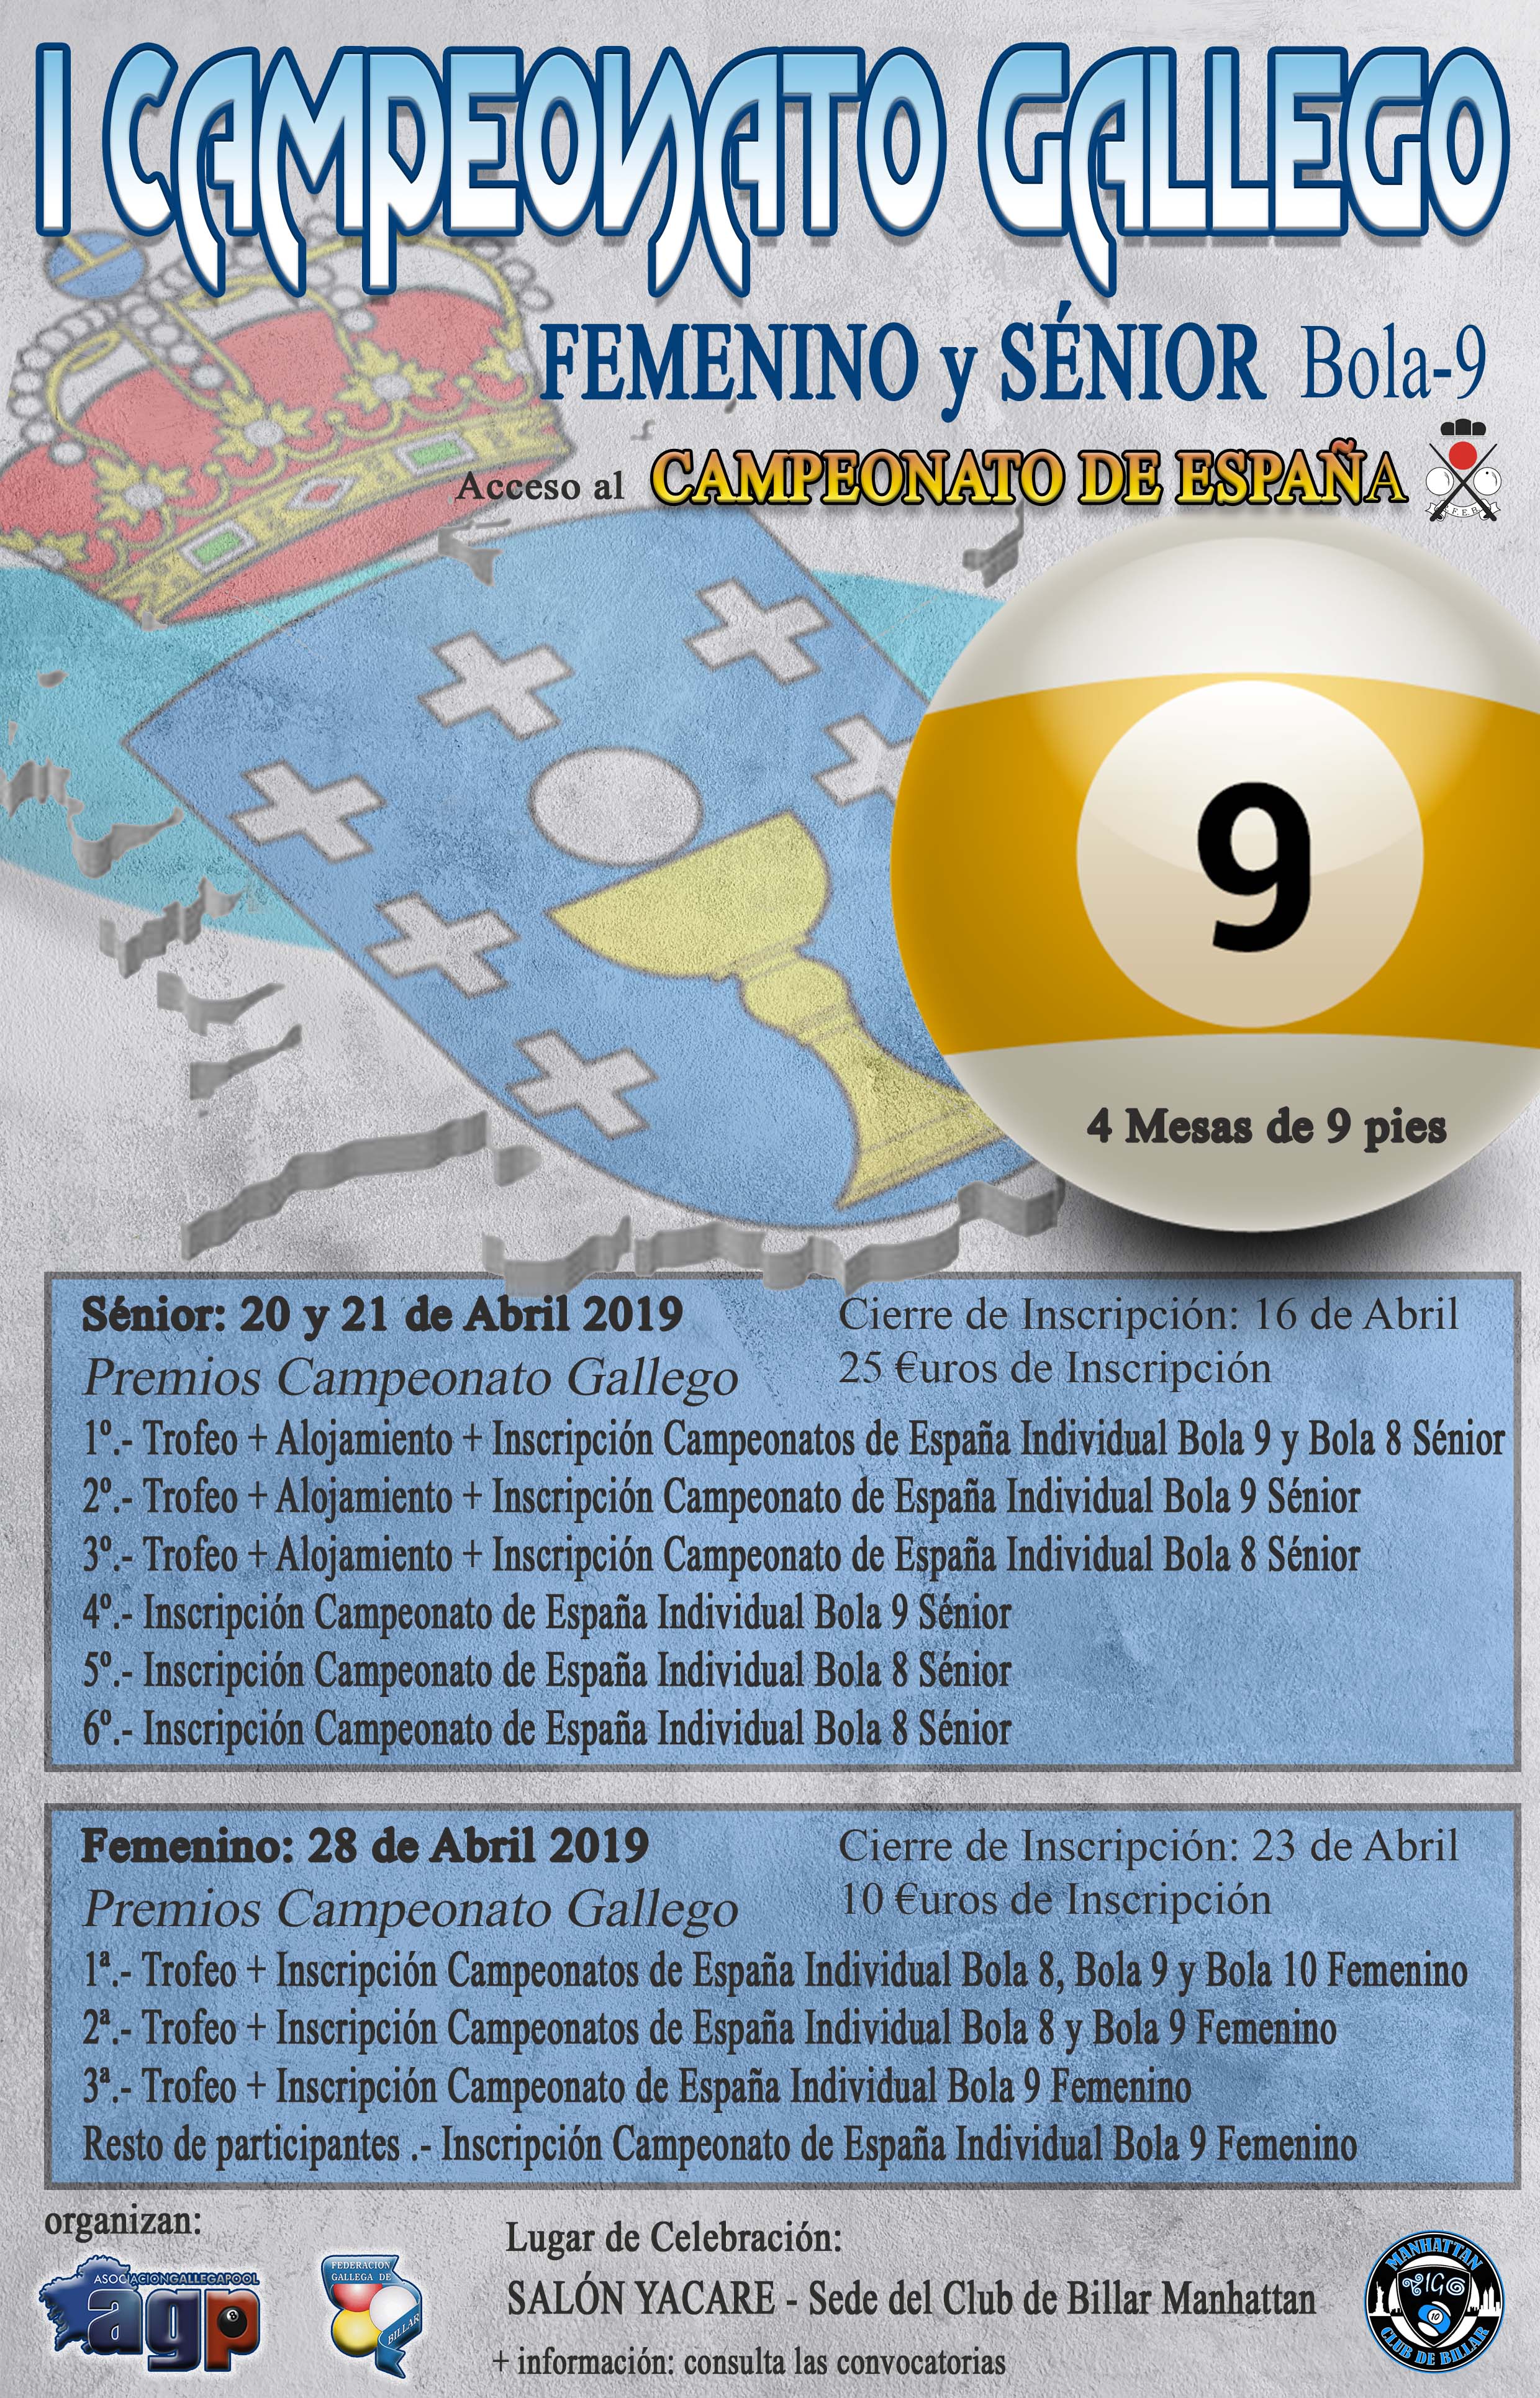 Campeonato Gallego Sénior y Femenino Bola-9